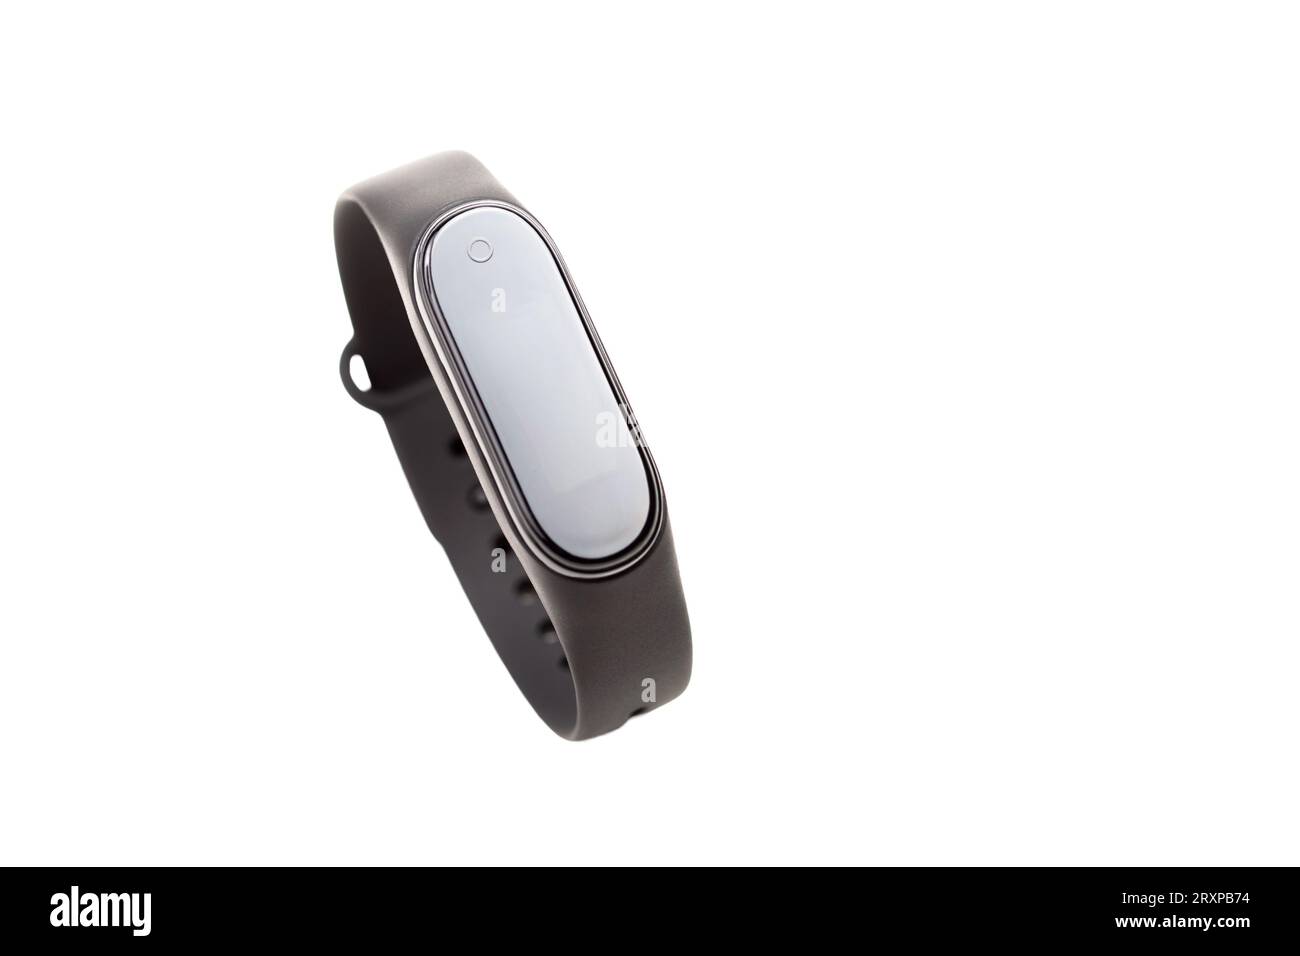 Smart Fit Band, Smartwatch, Smartband Objekt Nahaufnahme, Fitness Activity  Tracker isoliert auf weißem Hintergrund, ausgeschnitten, niemand.  Wearable-Technologie, wea Stockfotografie - Alamy